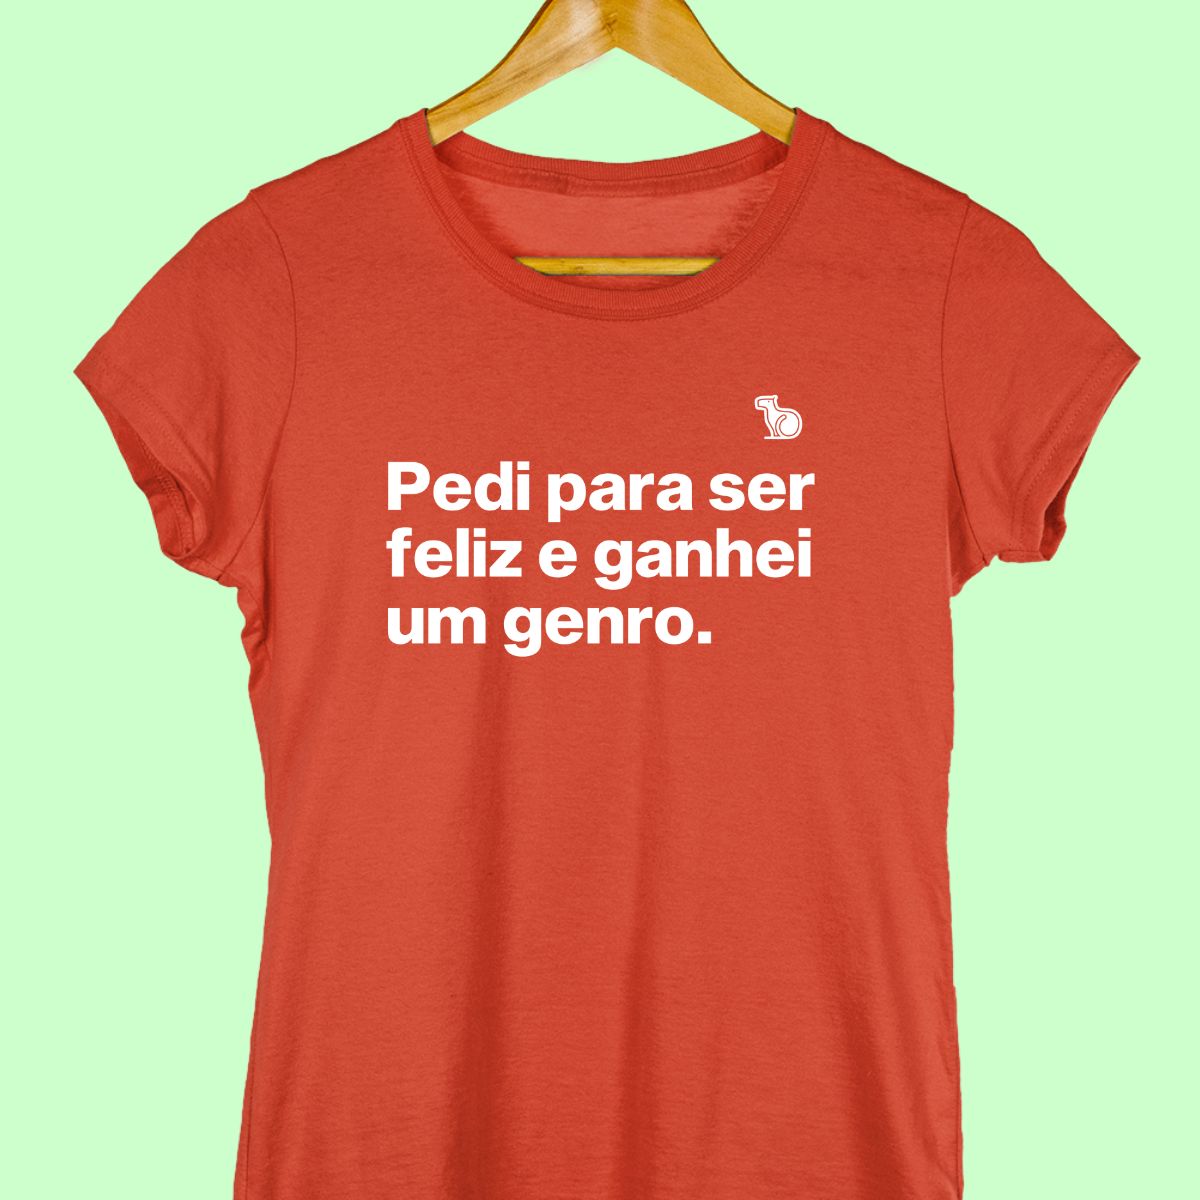 Camiseta com a frase "pedi para ser feliz e ganhei um genro." feminina vermelha.